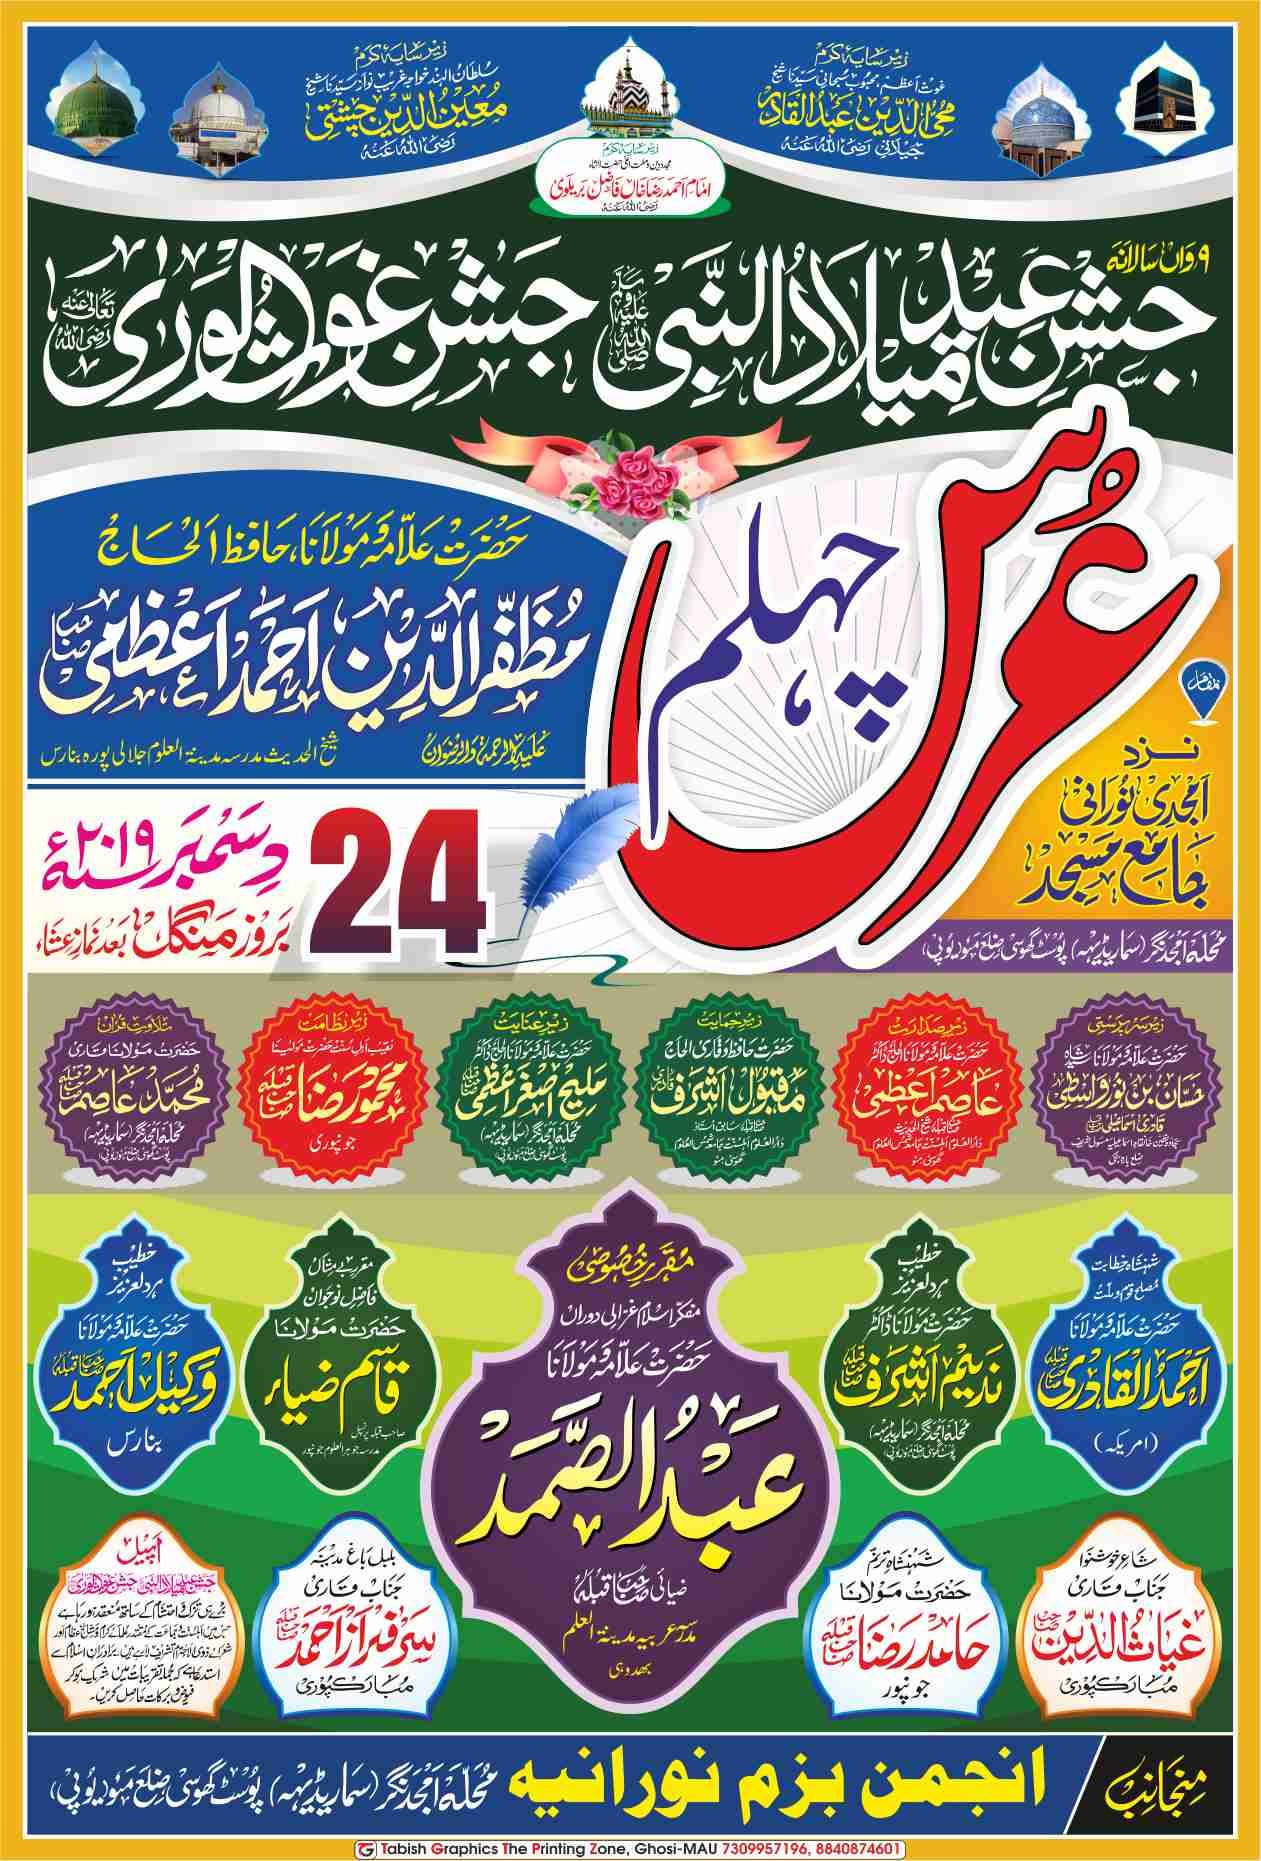 chehlum poster design in urdu